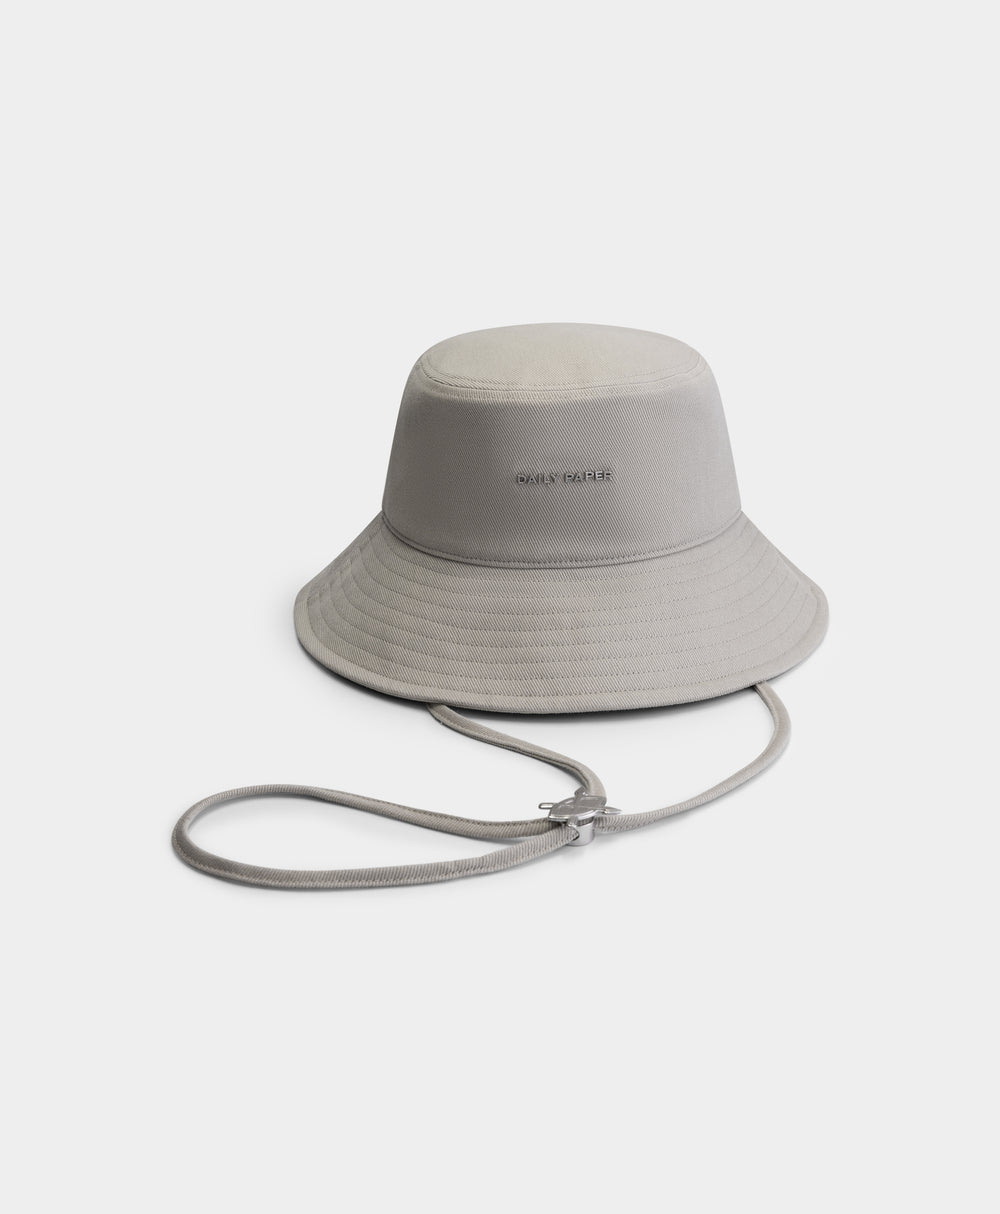 DP - Moonstruck Grey Niu Bucket Hat - Packshot - Front